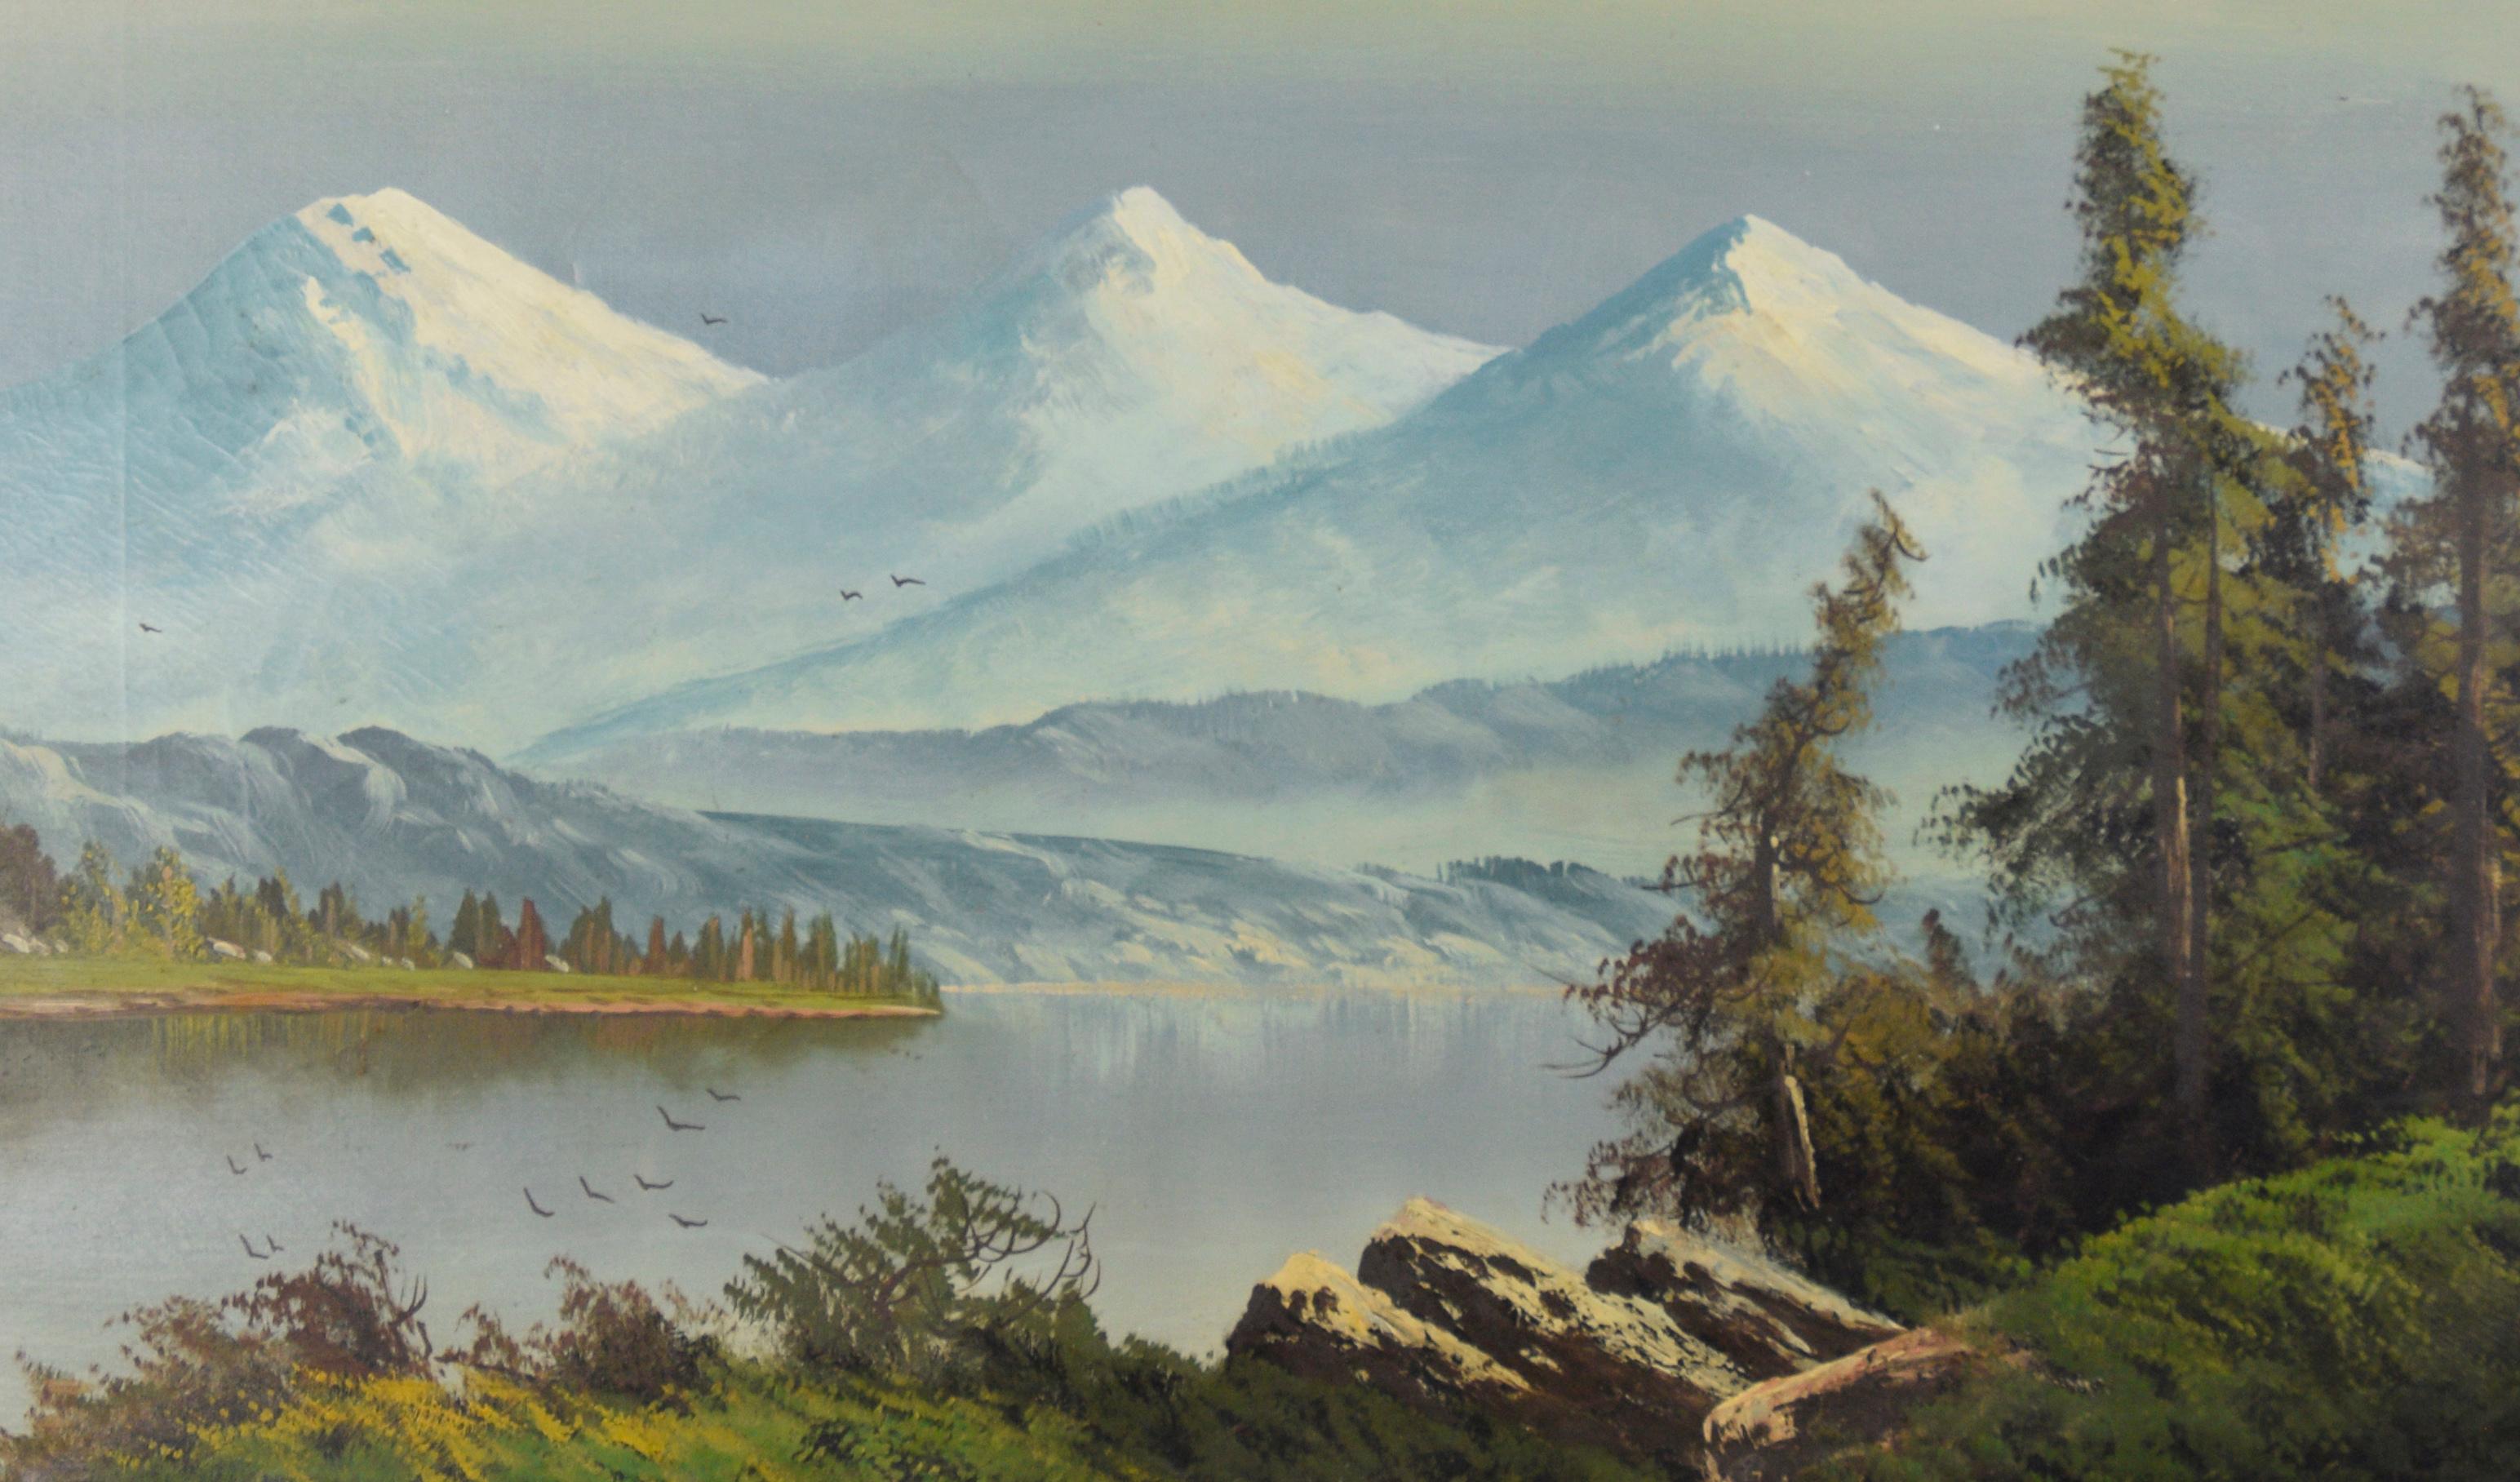 Trois sœurs dans la chaîne Cascade, lac de l'Oregon avec oiseaux migrant - Impressionnisme Painting par John Englehart